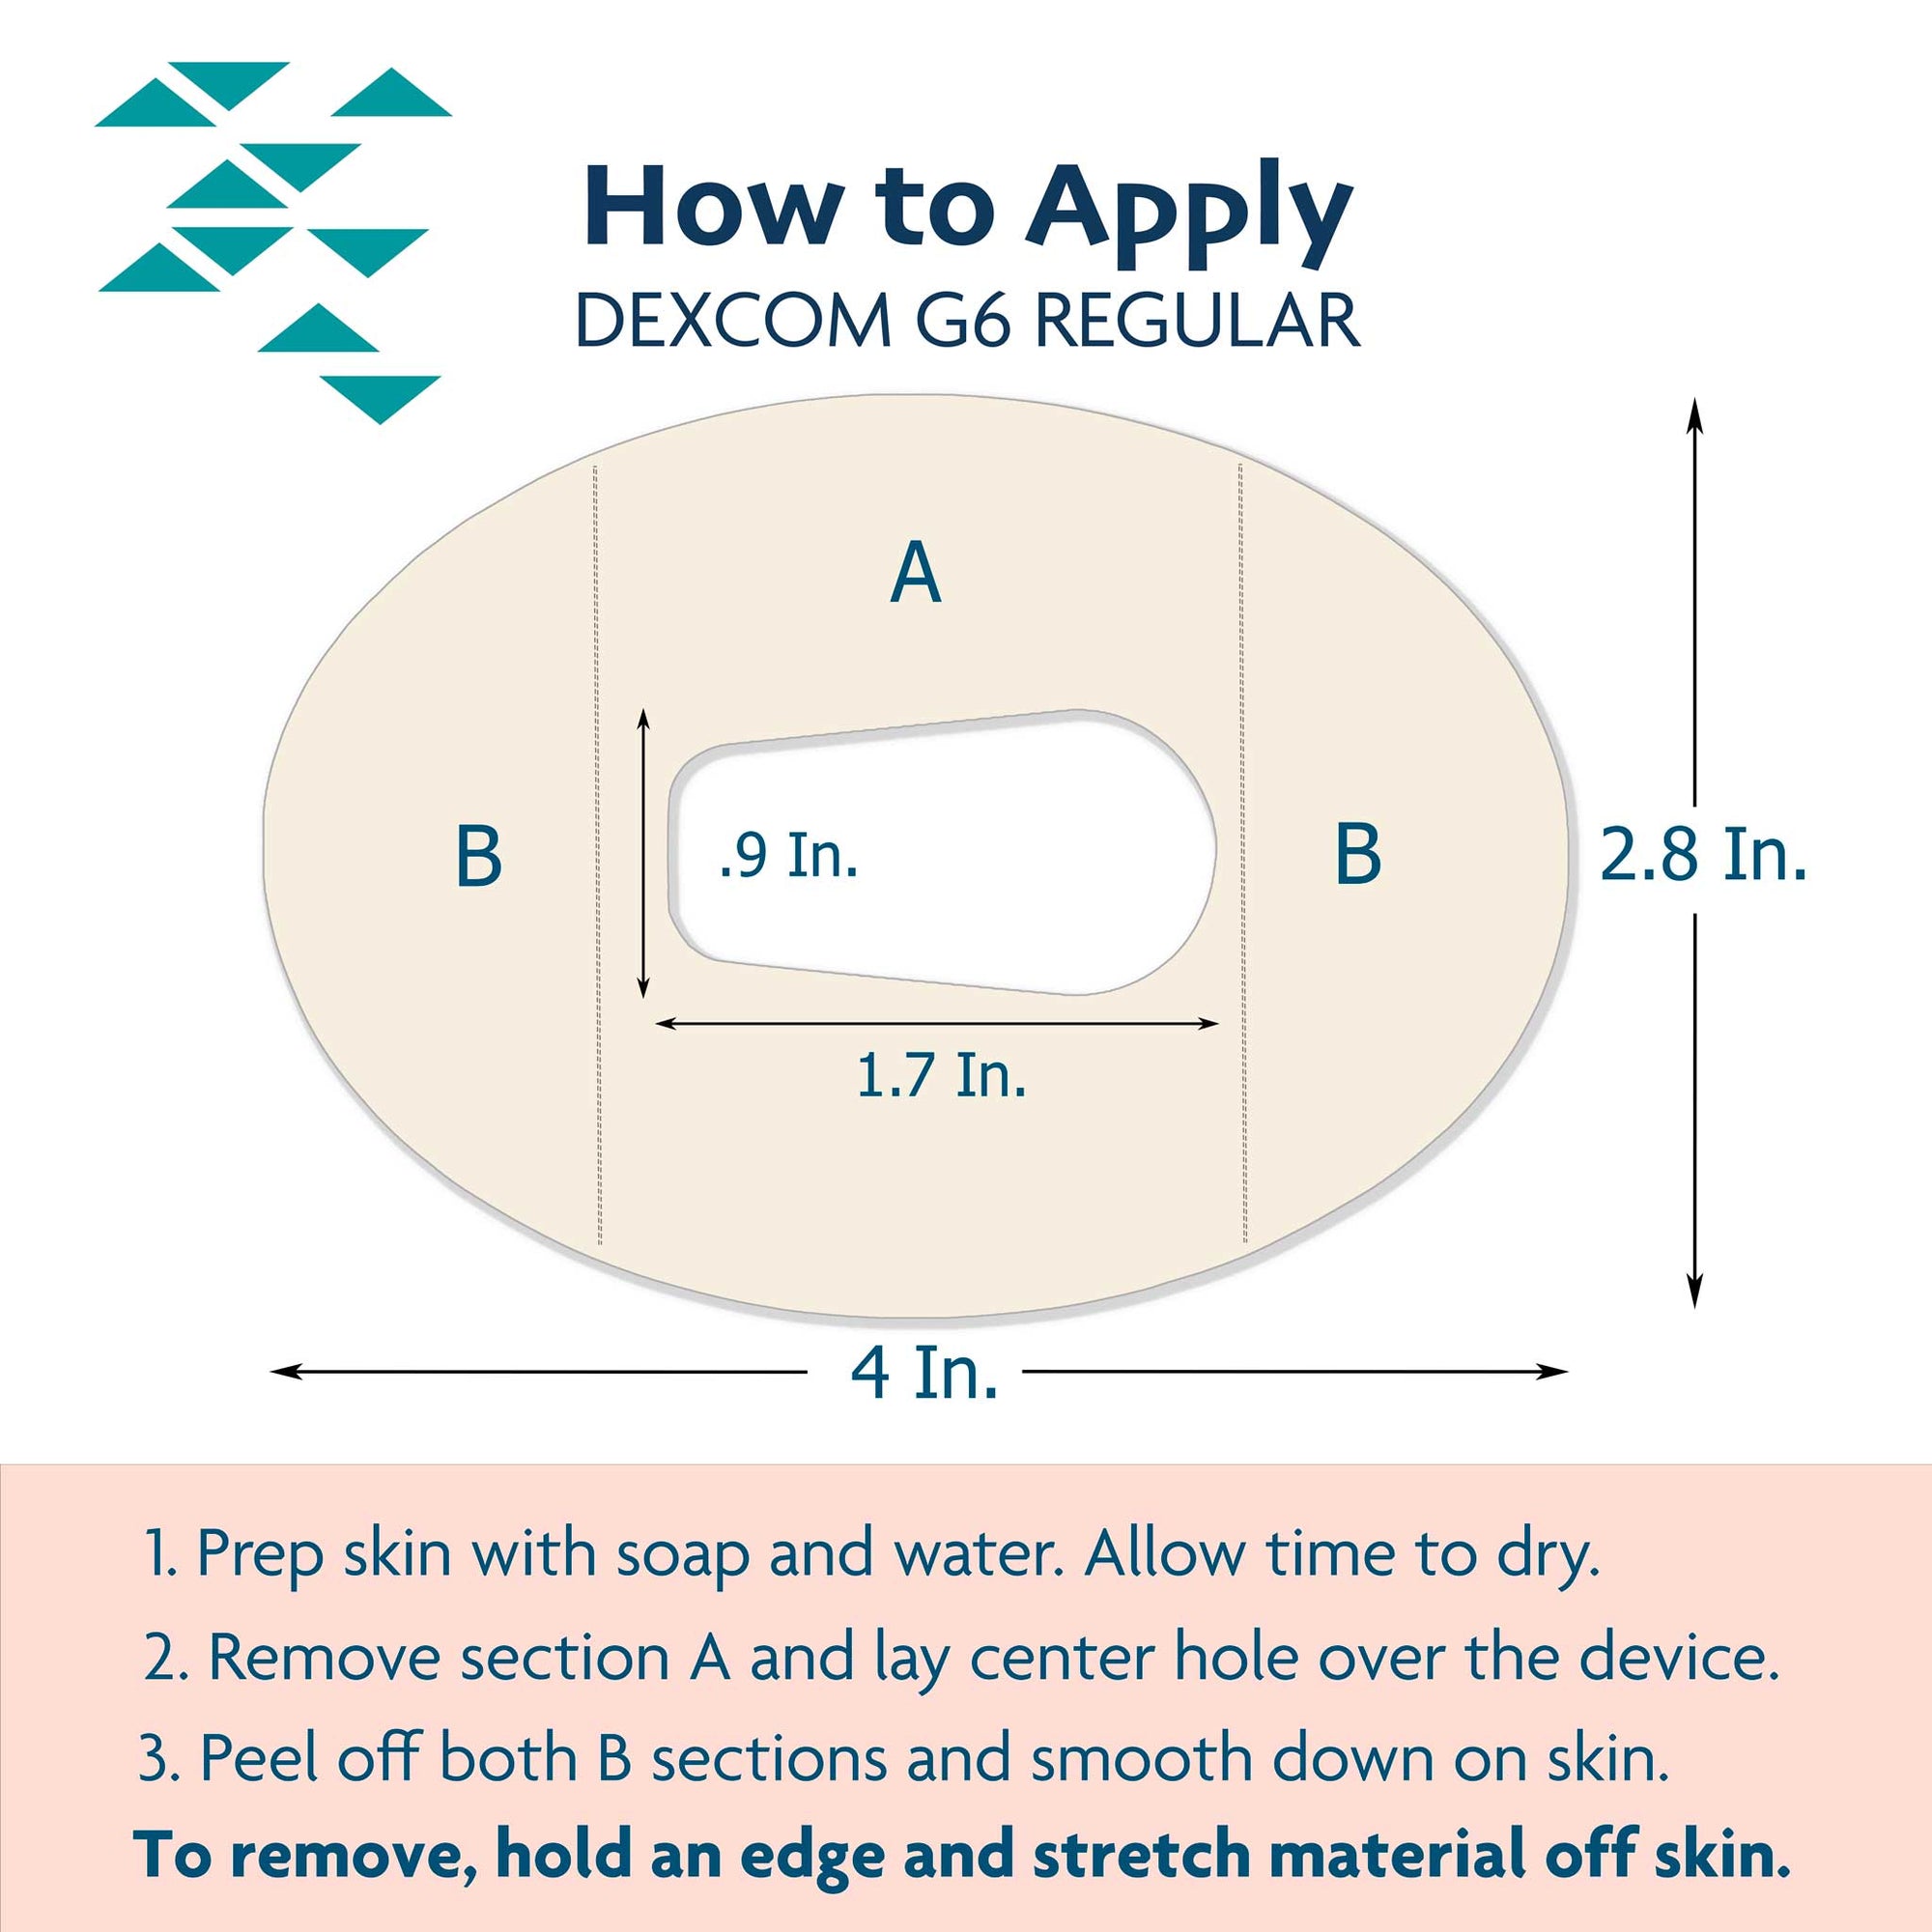 Dexcom G6 Application Guide for Proper Use